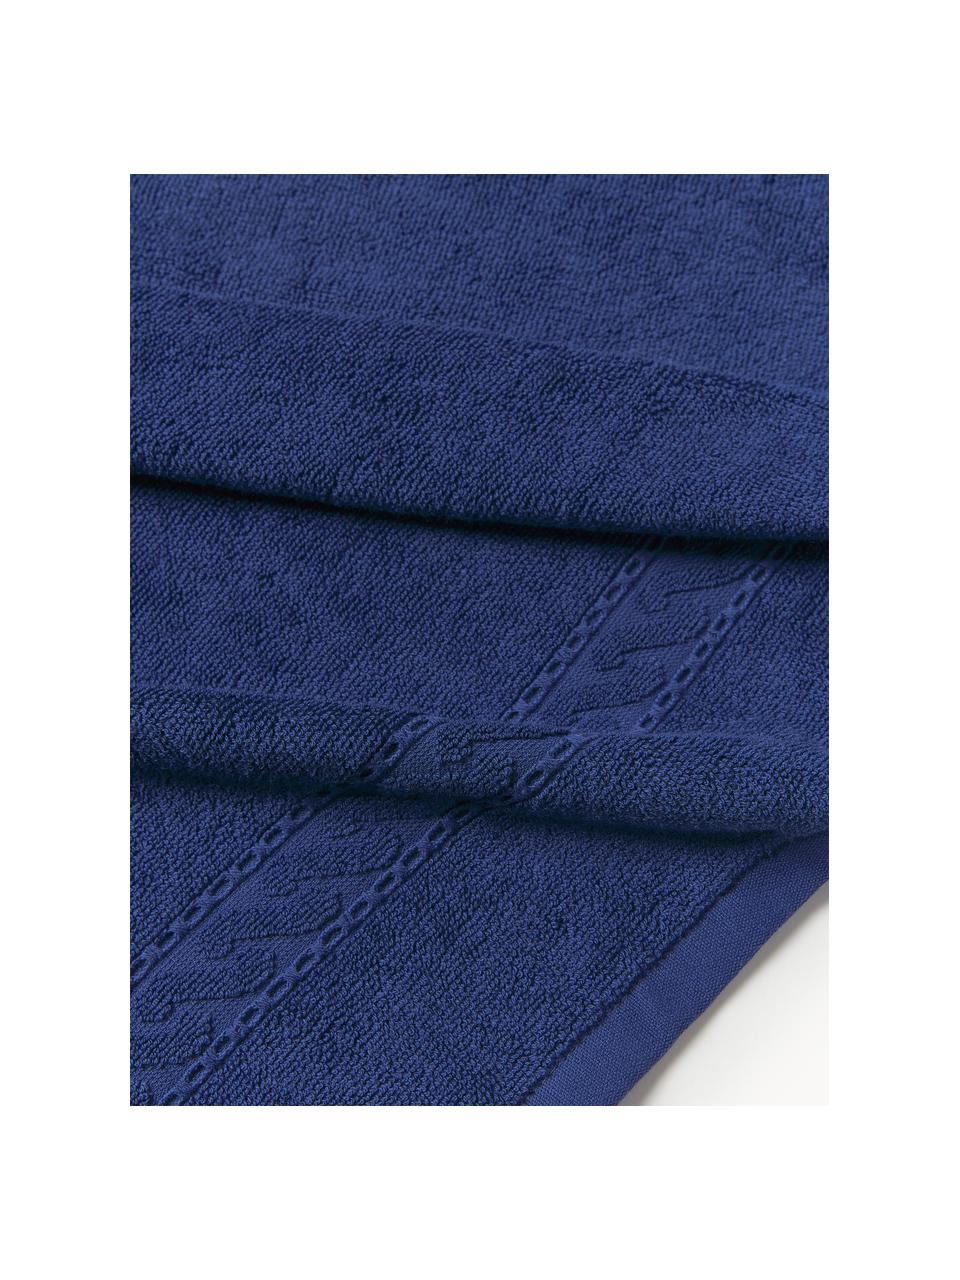 Toallas Cordelia, tamaños diferentes, Azul oscuro, Toalla ducha, An 70 x L 140 cm